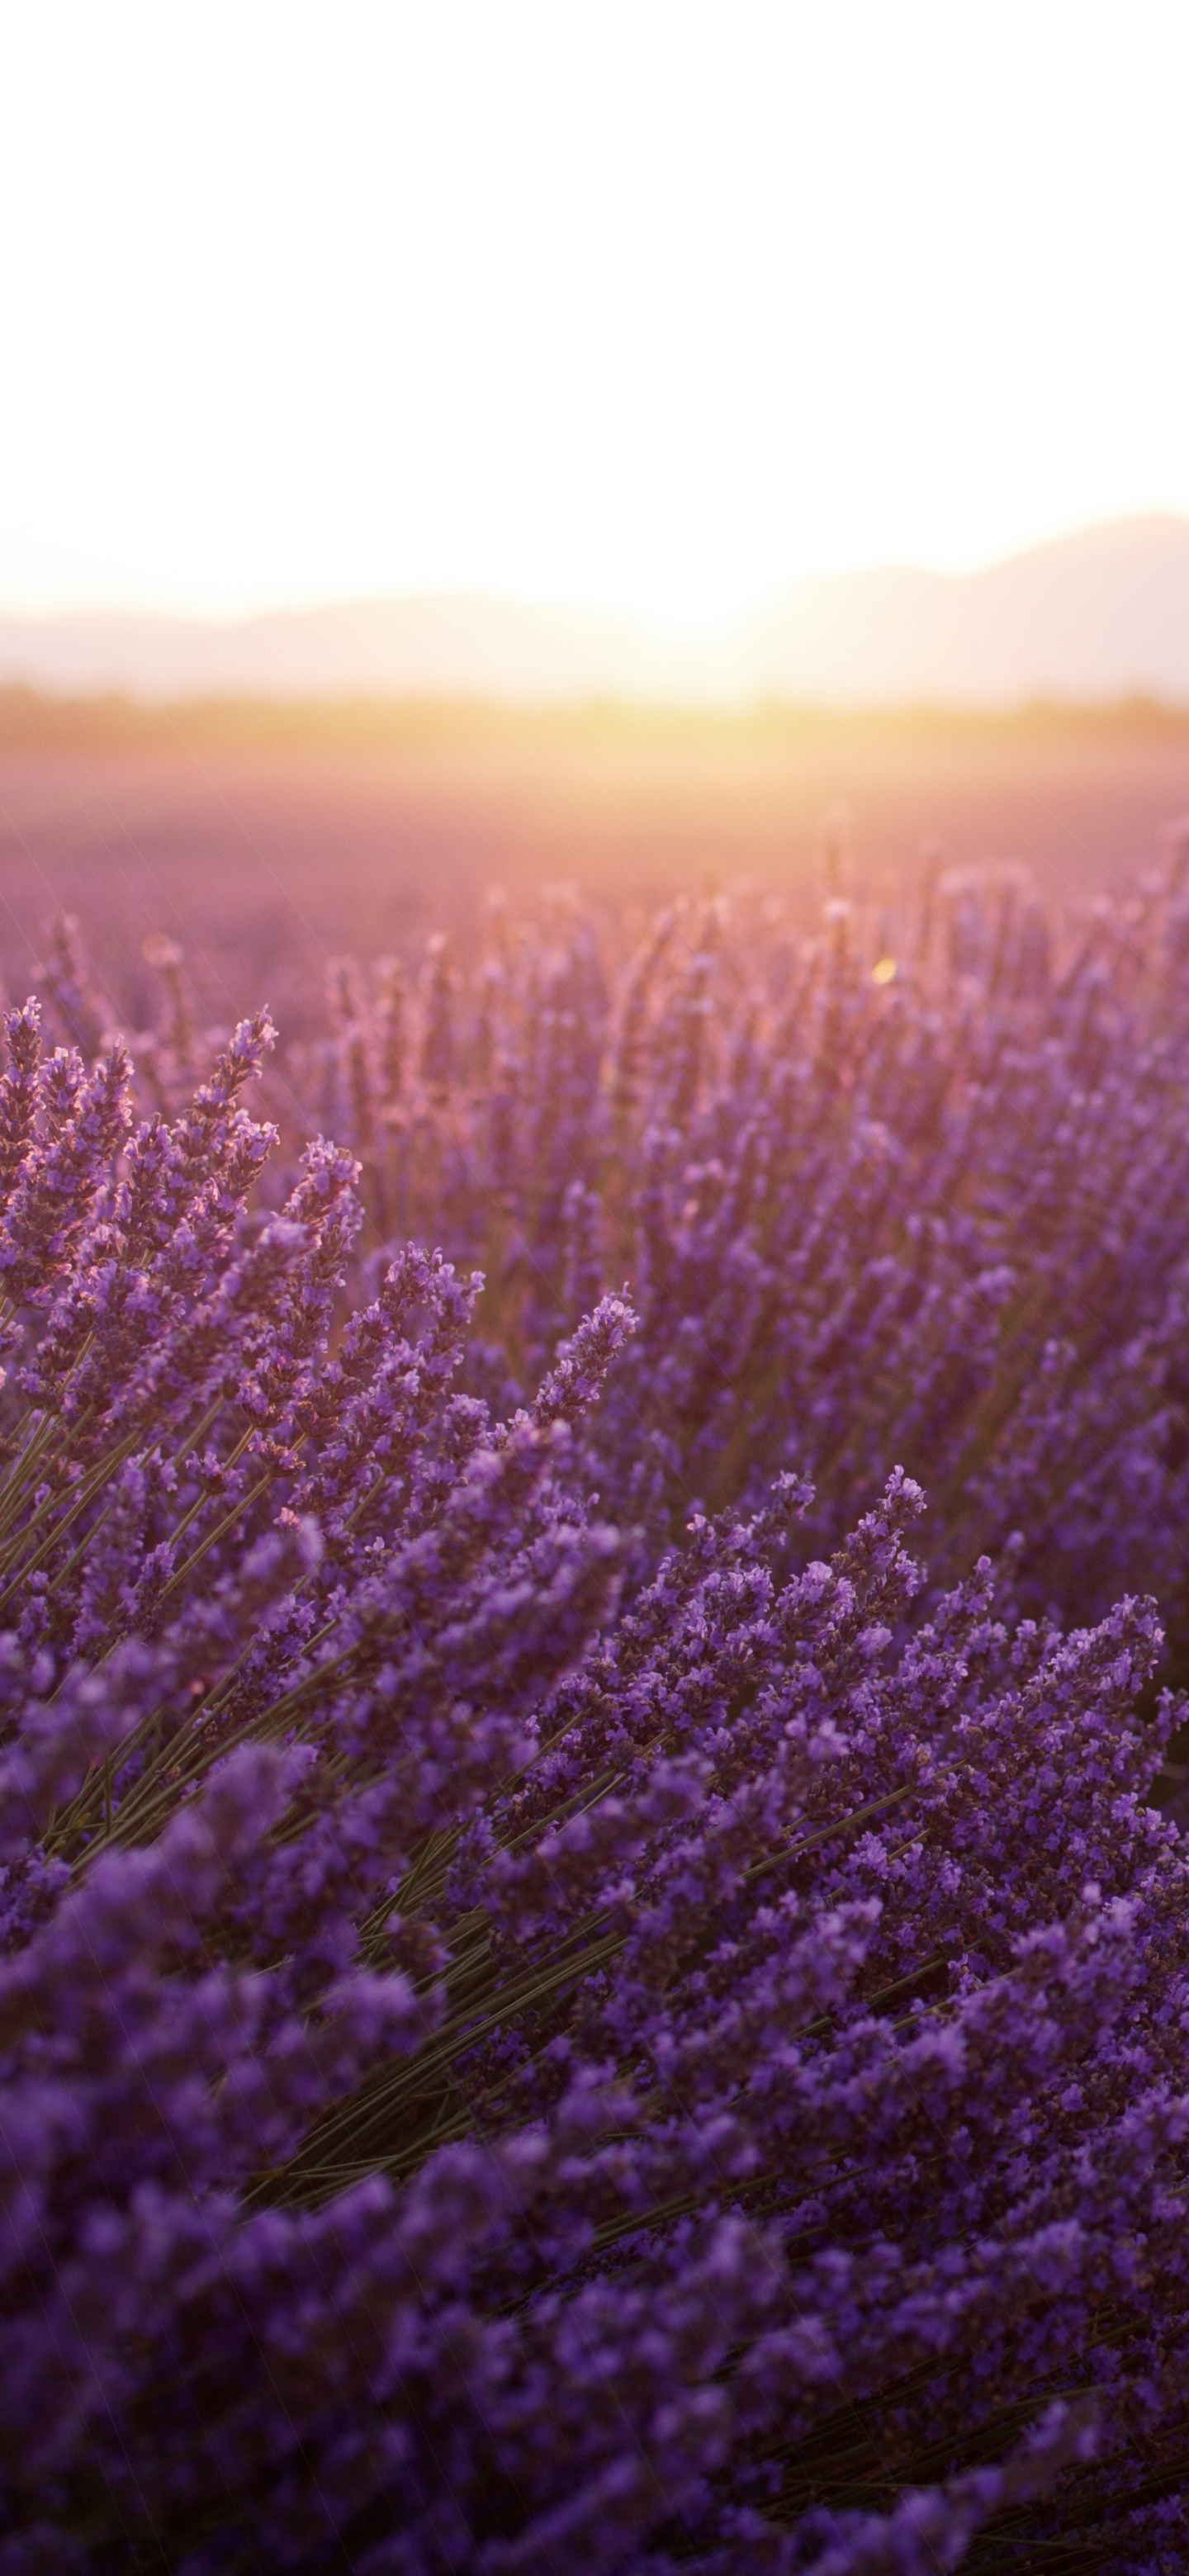 лавандовые поля, фиолетовые обои, лаванда, закат в поле цветов